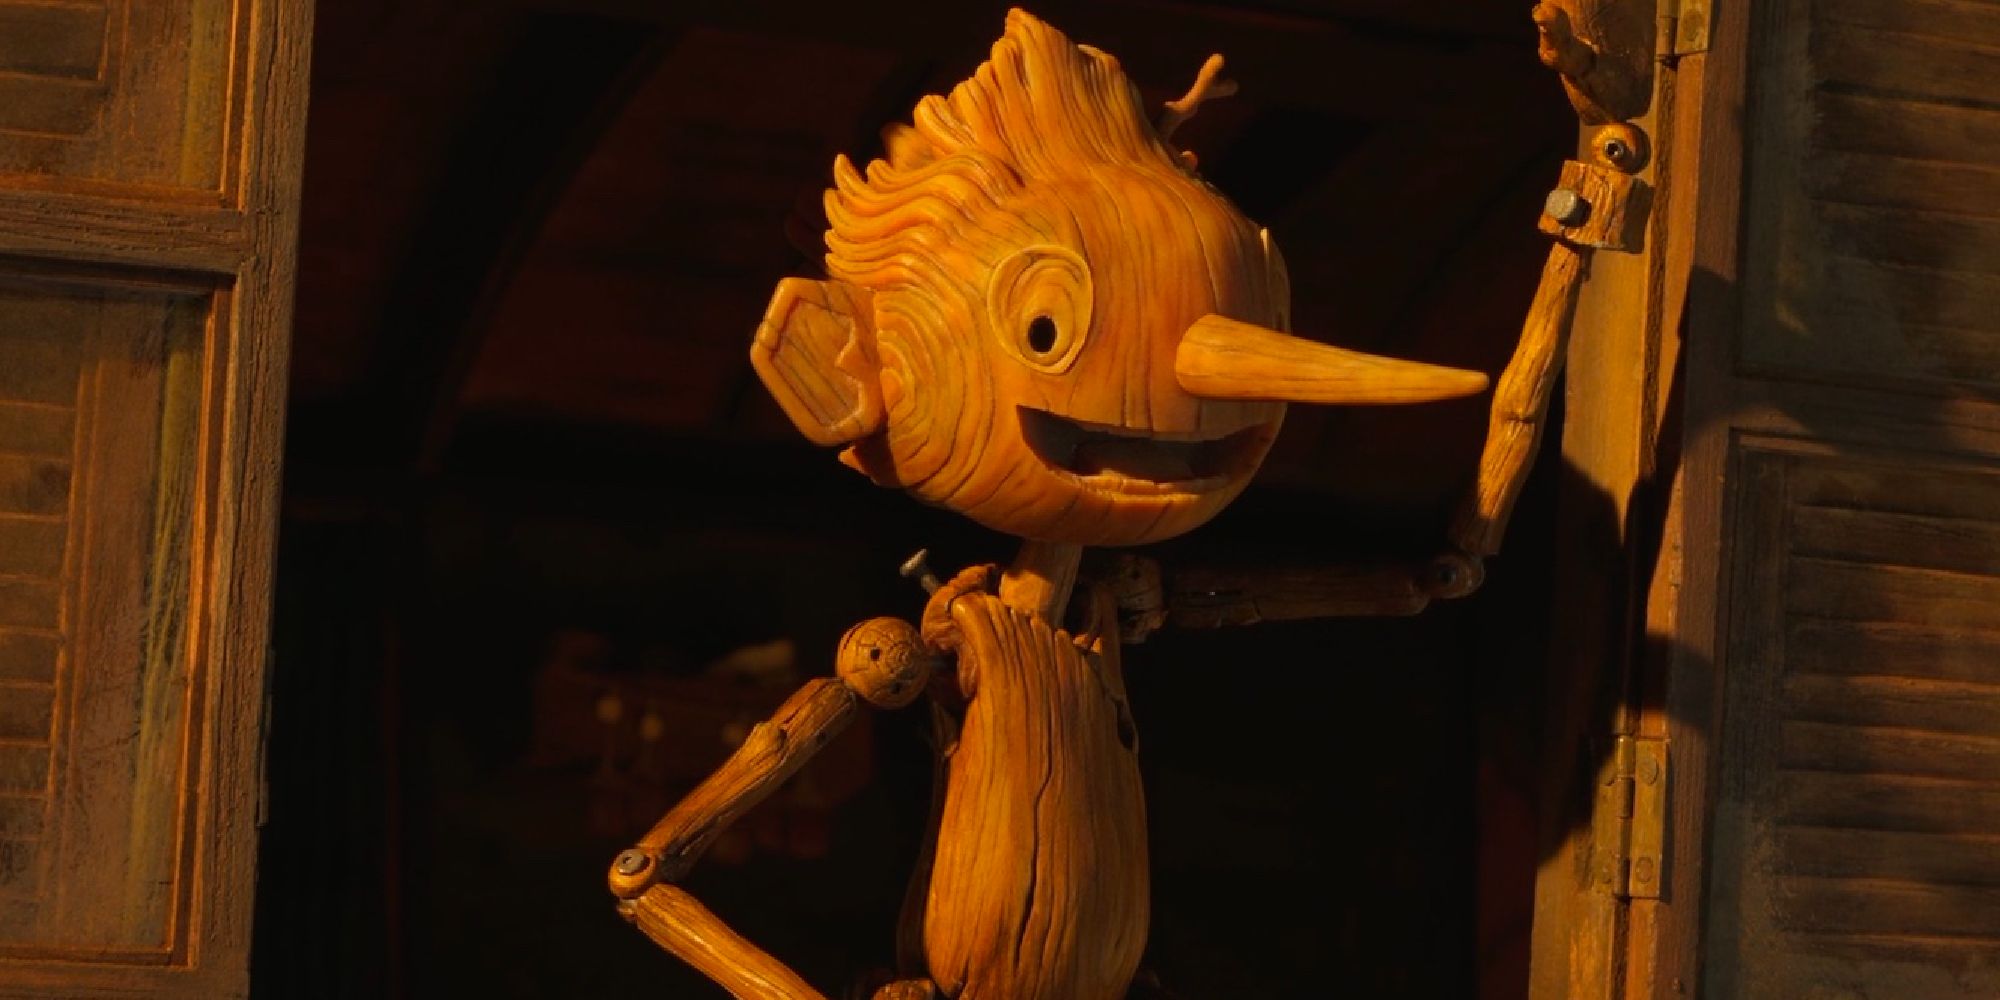 Pinocchio singing in Guillermo Del Toro's Pinocchio